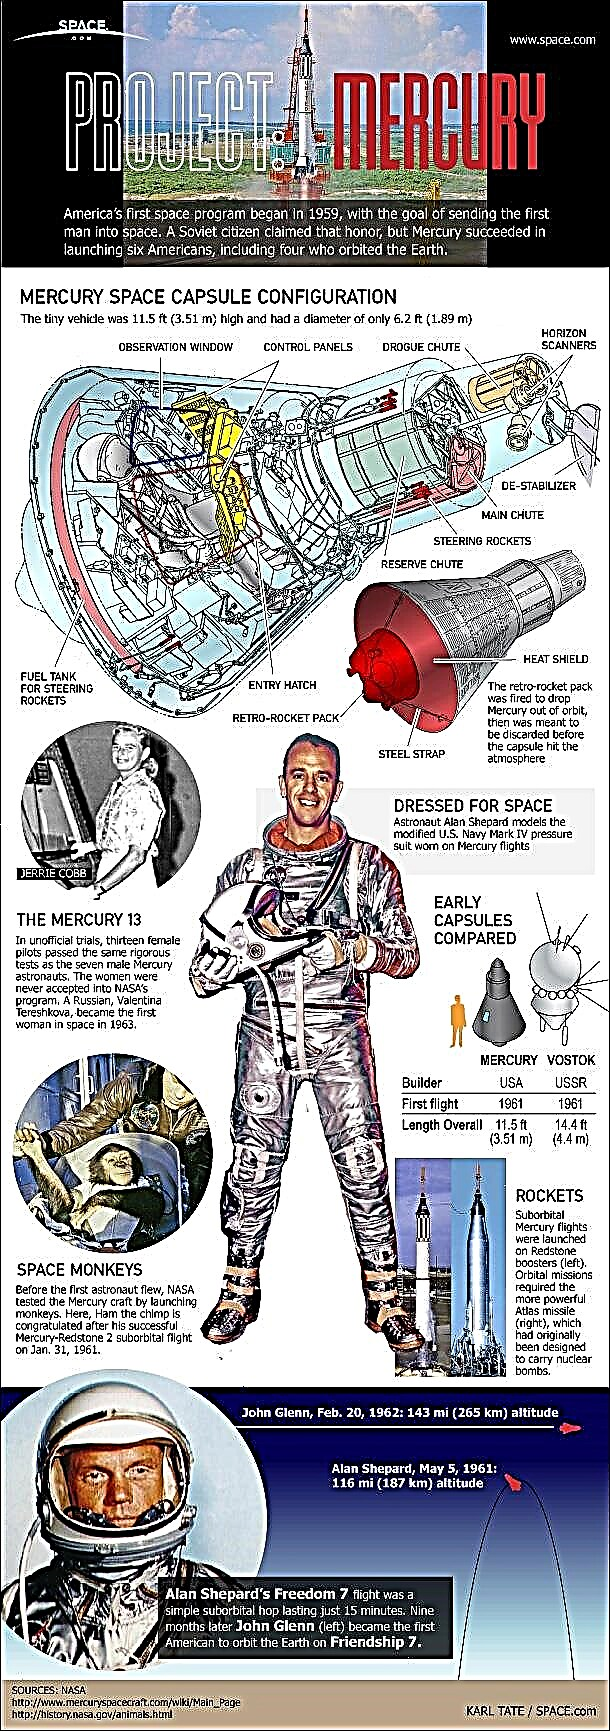 Progetto Mercury: il primo programma spaziale con equipaggio d'America